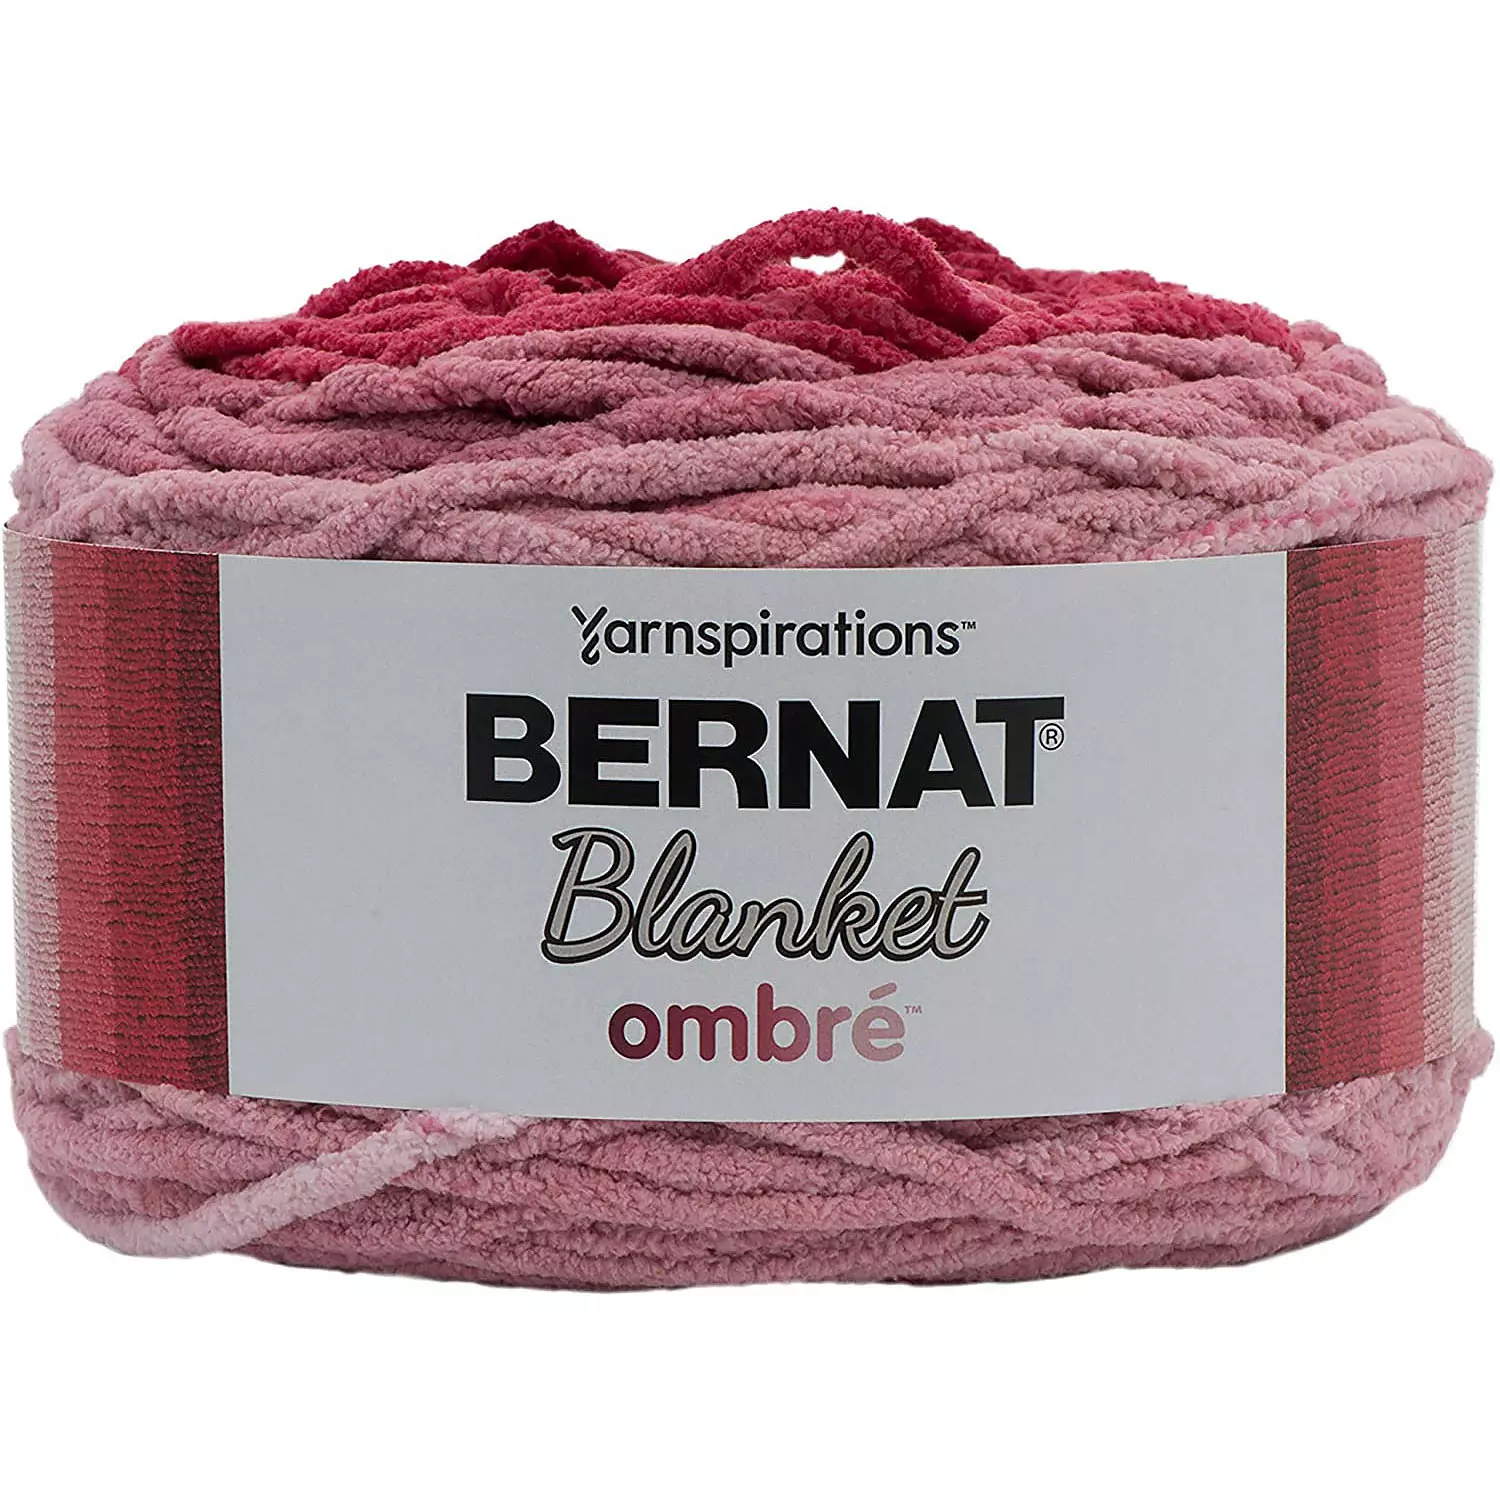 Bernat Blanket Ombré - Yarn, burgundy